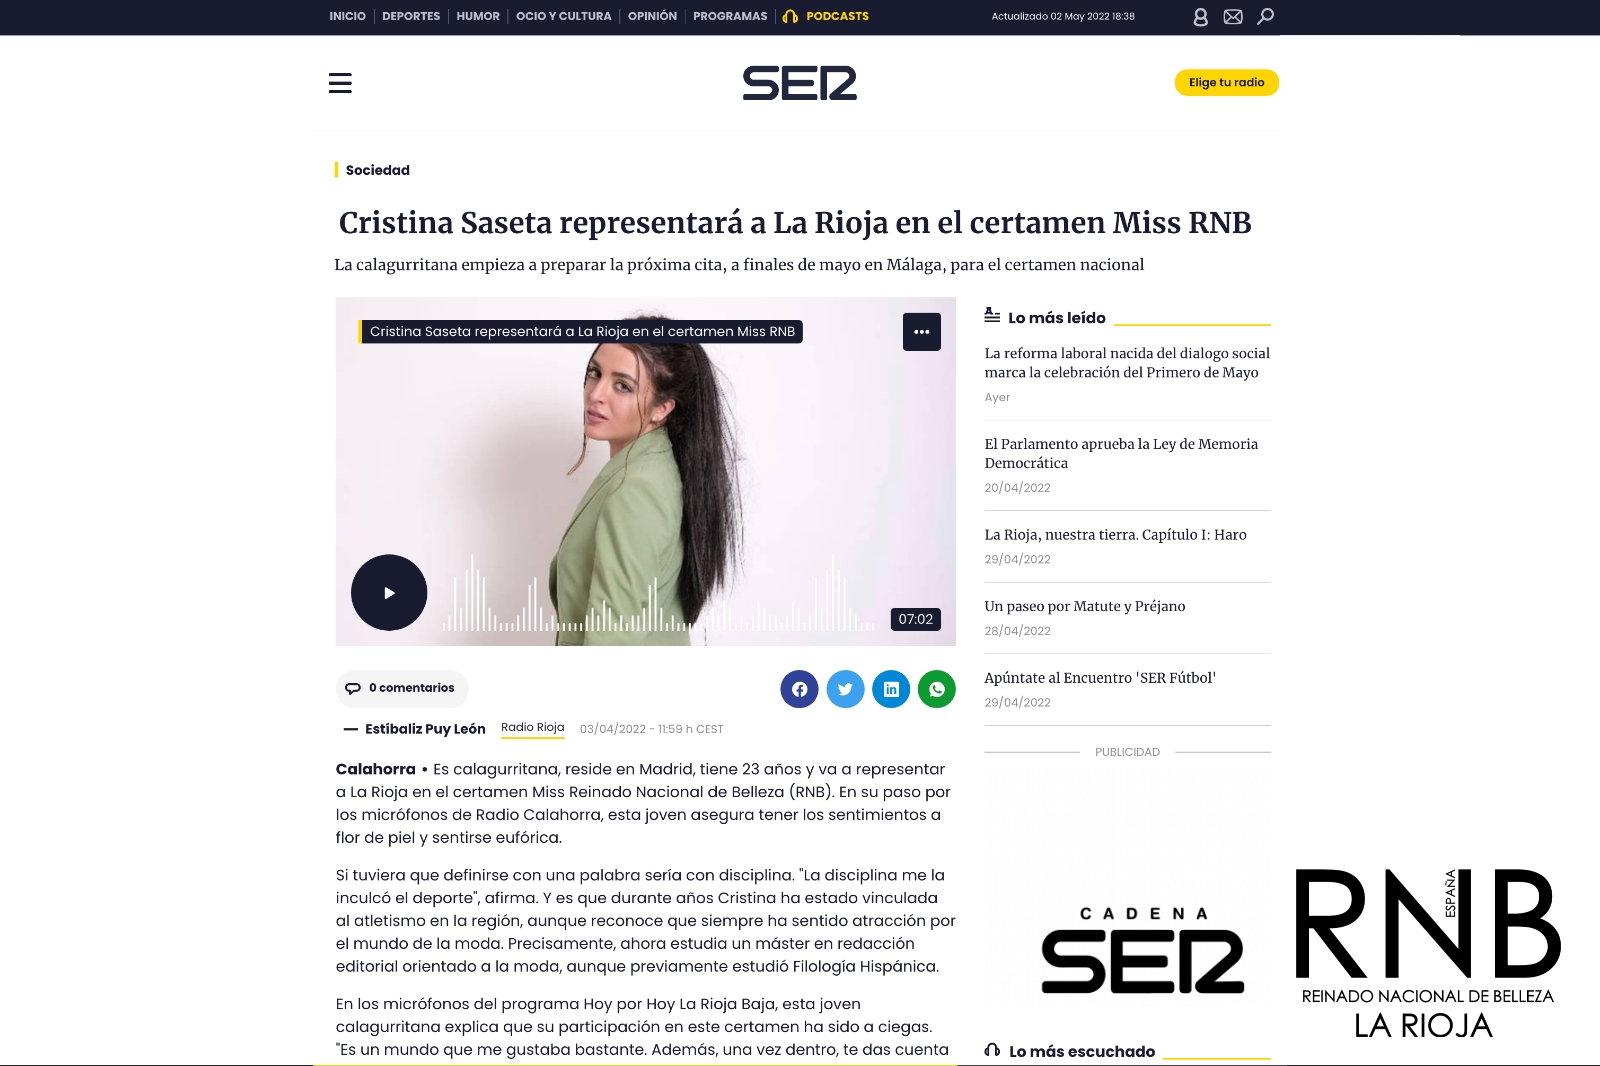 Cristina Saseta Miss RNB La Rioja 2022 Cadena SER